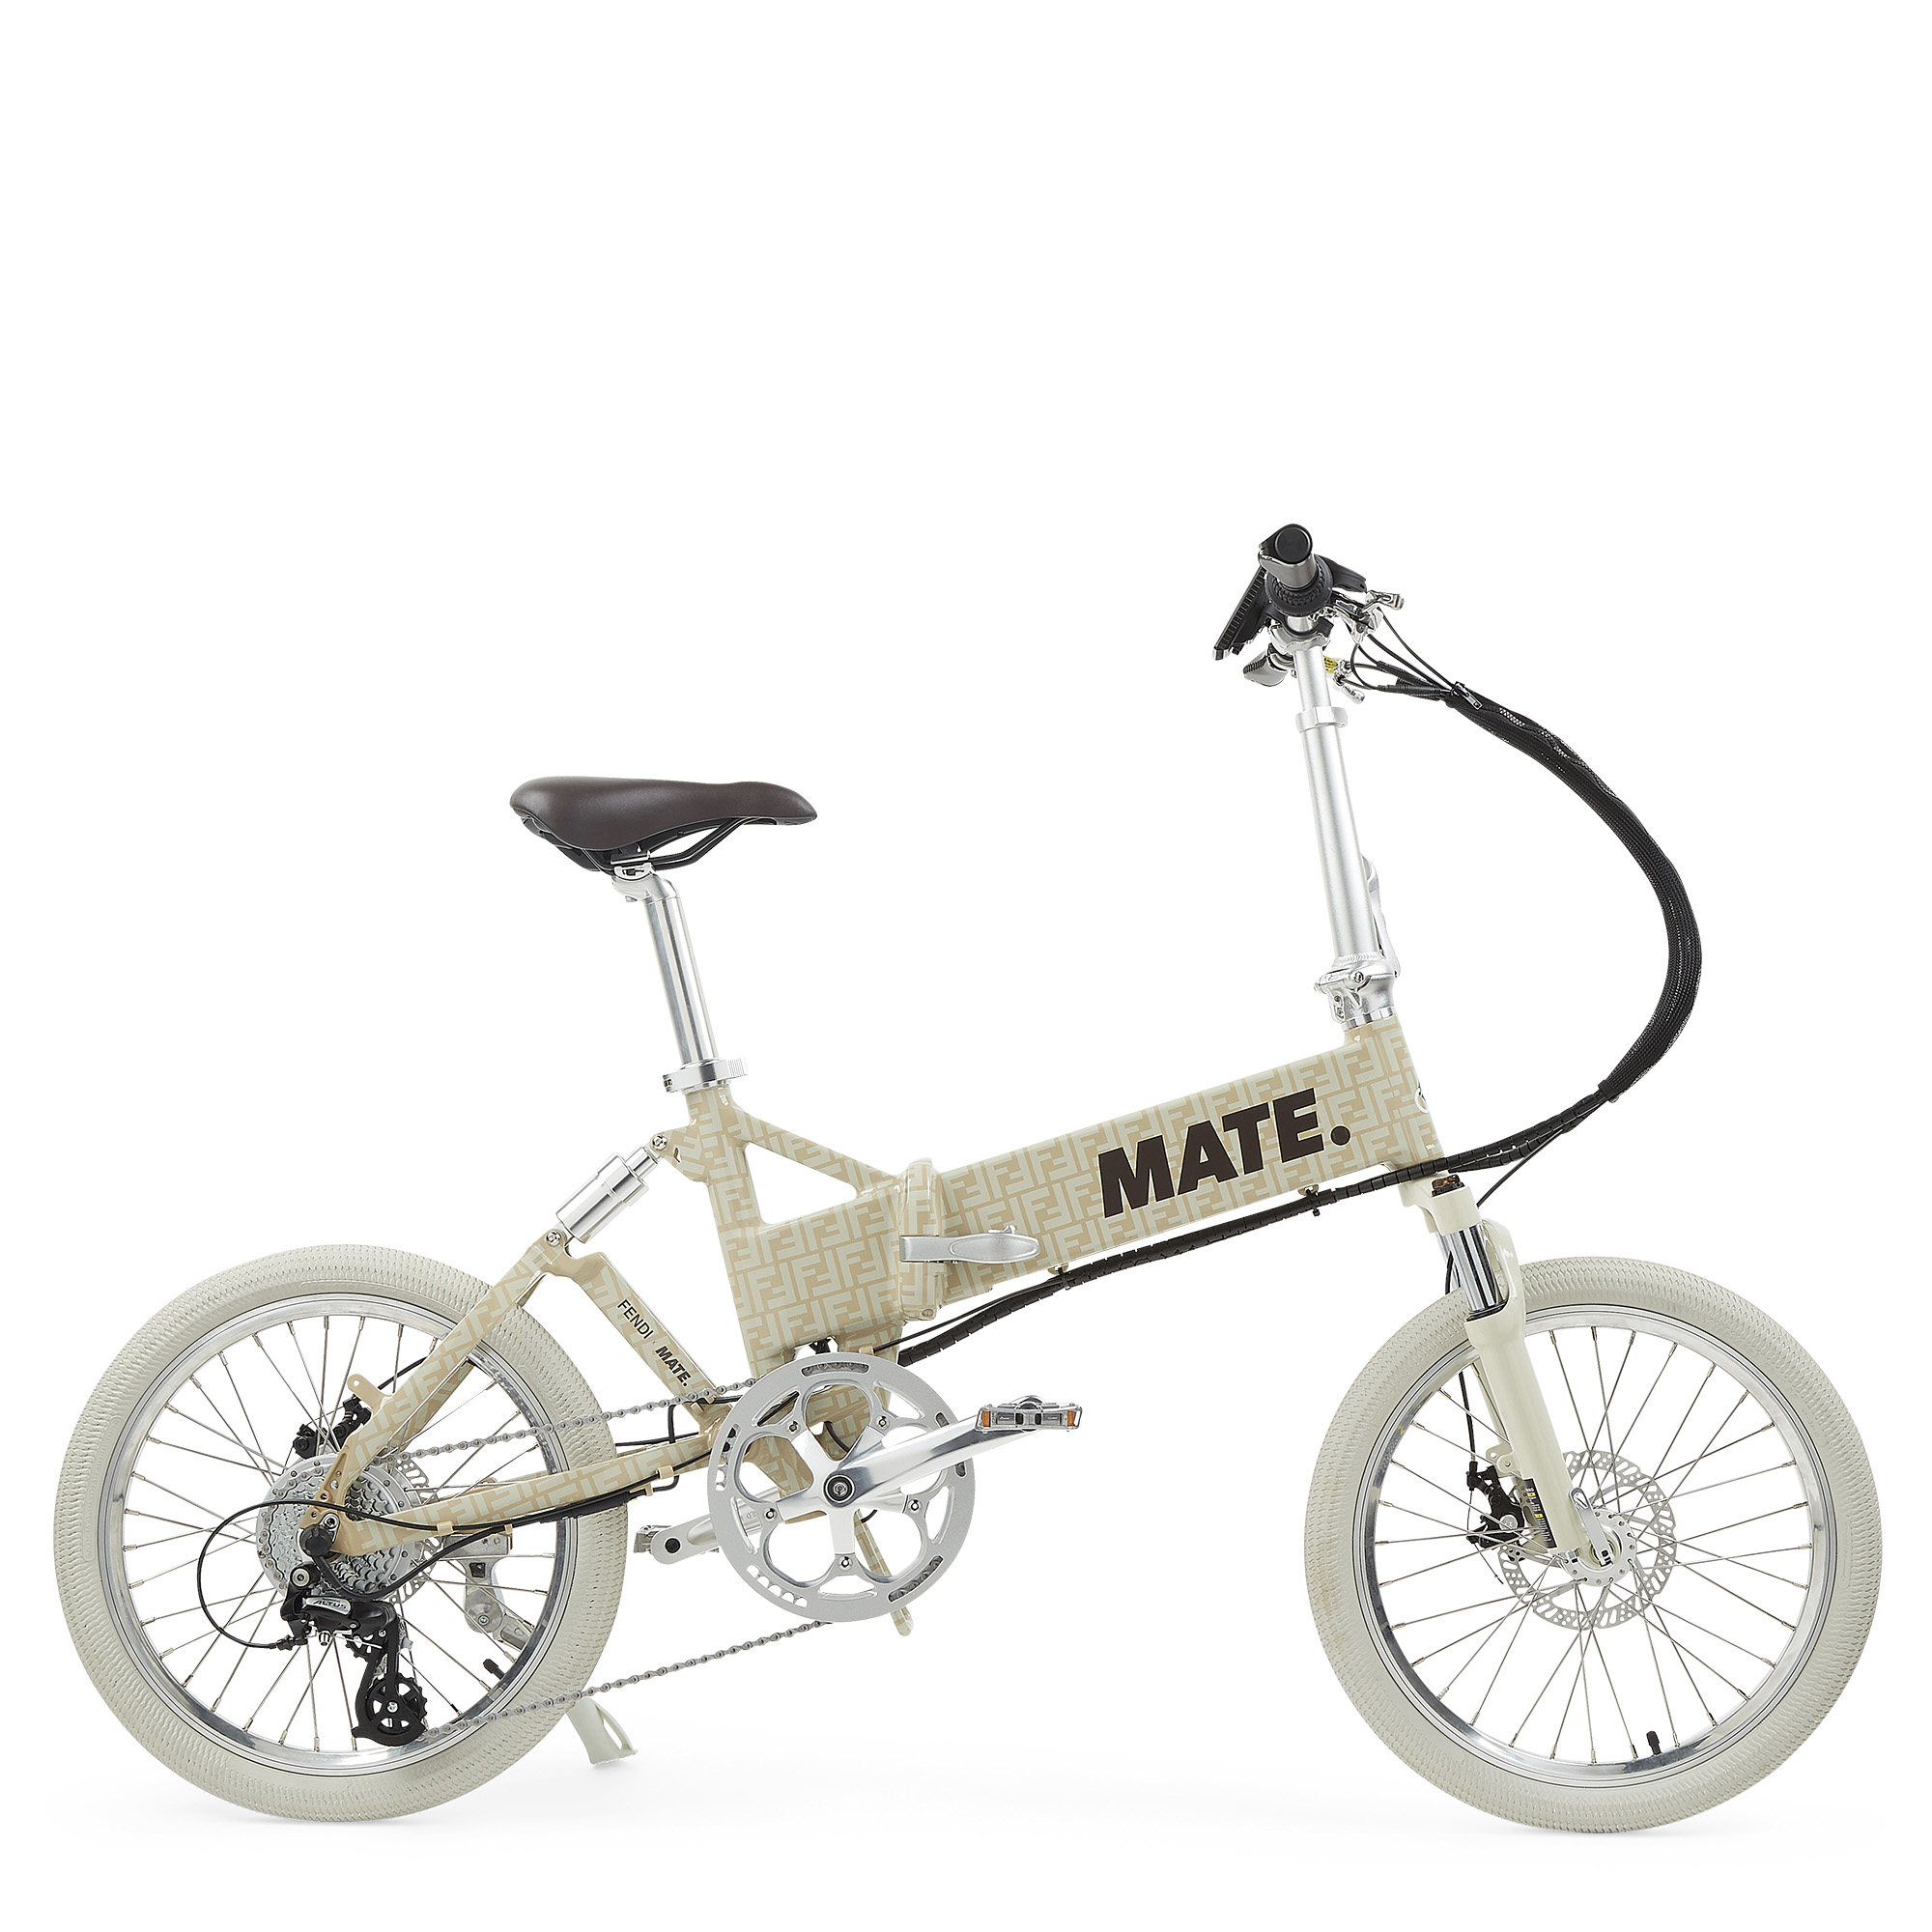 FENDI x MATE.BIKE 推出电动自行车